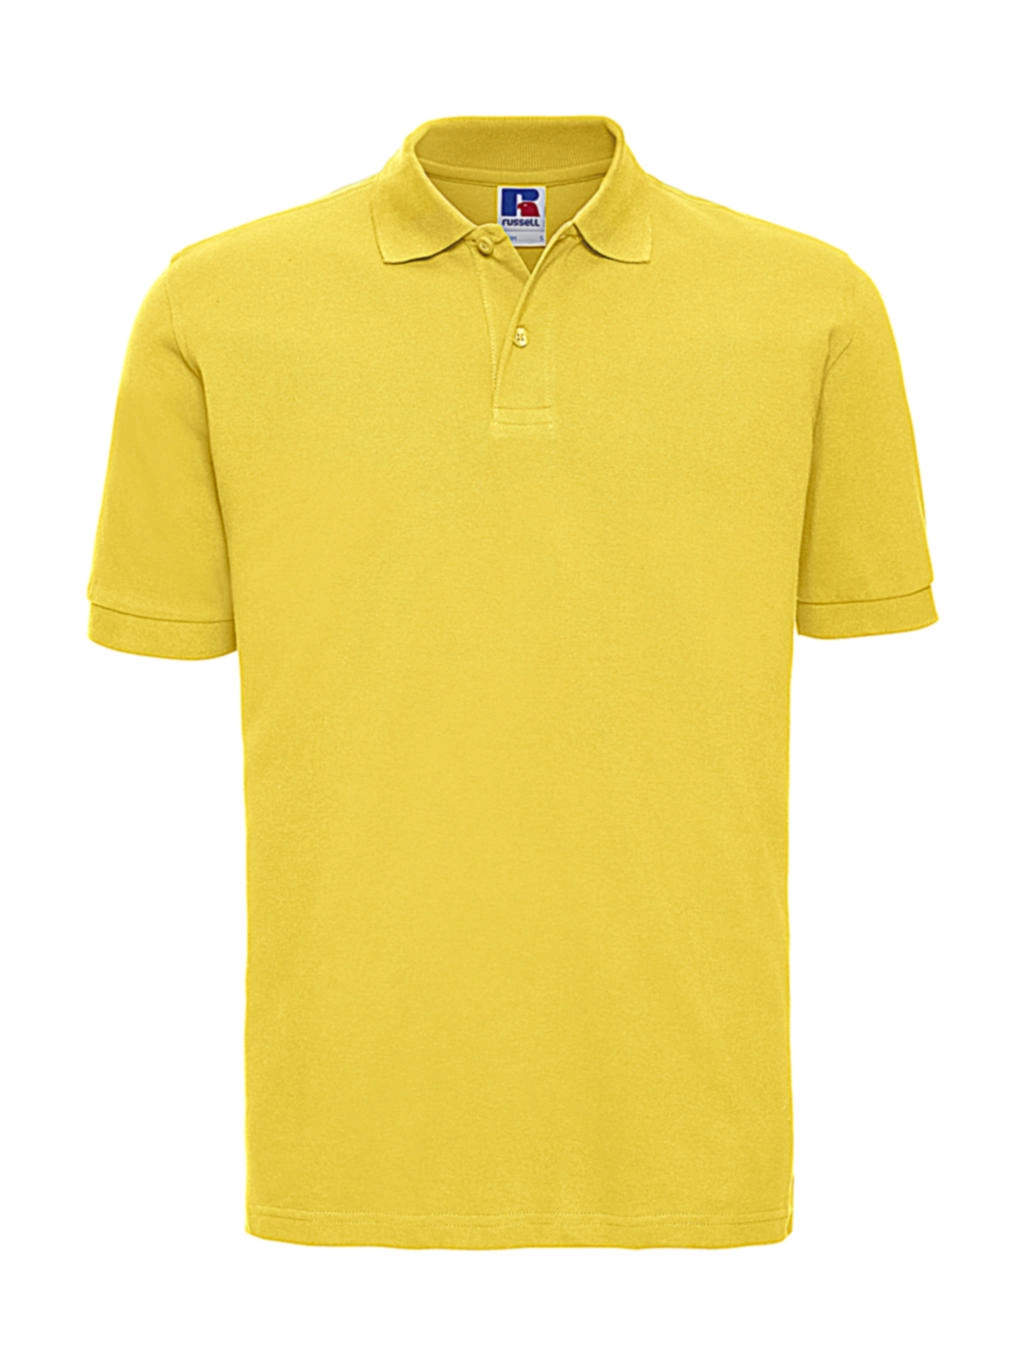 Men`s Classic Cotton Polo zum Besticken und Bedrucken in der Farbe Yellow mit Ihren Logo, Schriftzug oder Motiv.